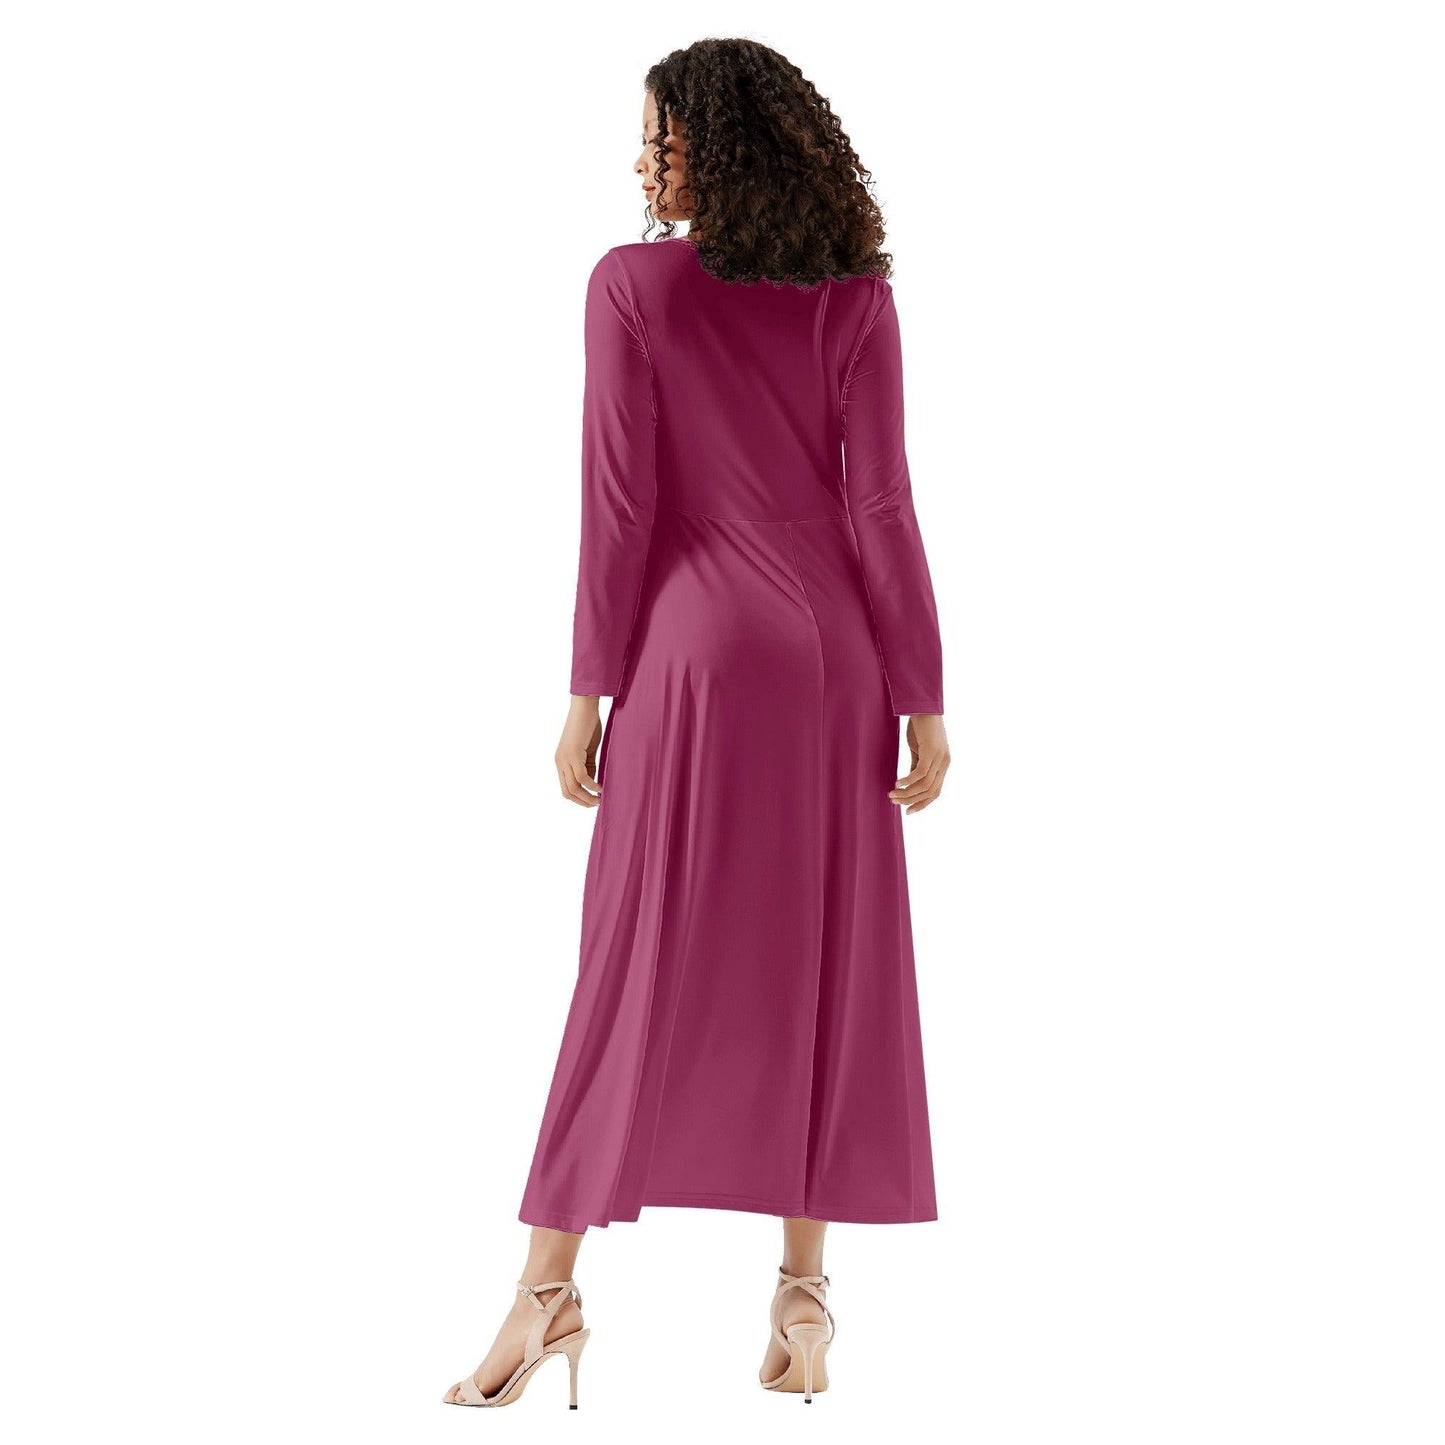 Burgund Long Sleeve Dress -- Burgund Long Sleeve Dress - undefined Long Sleeve Dress | JLR Design